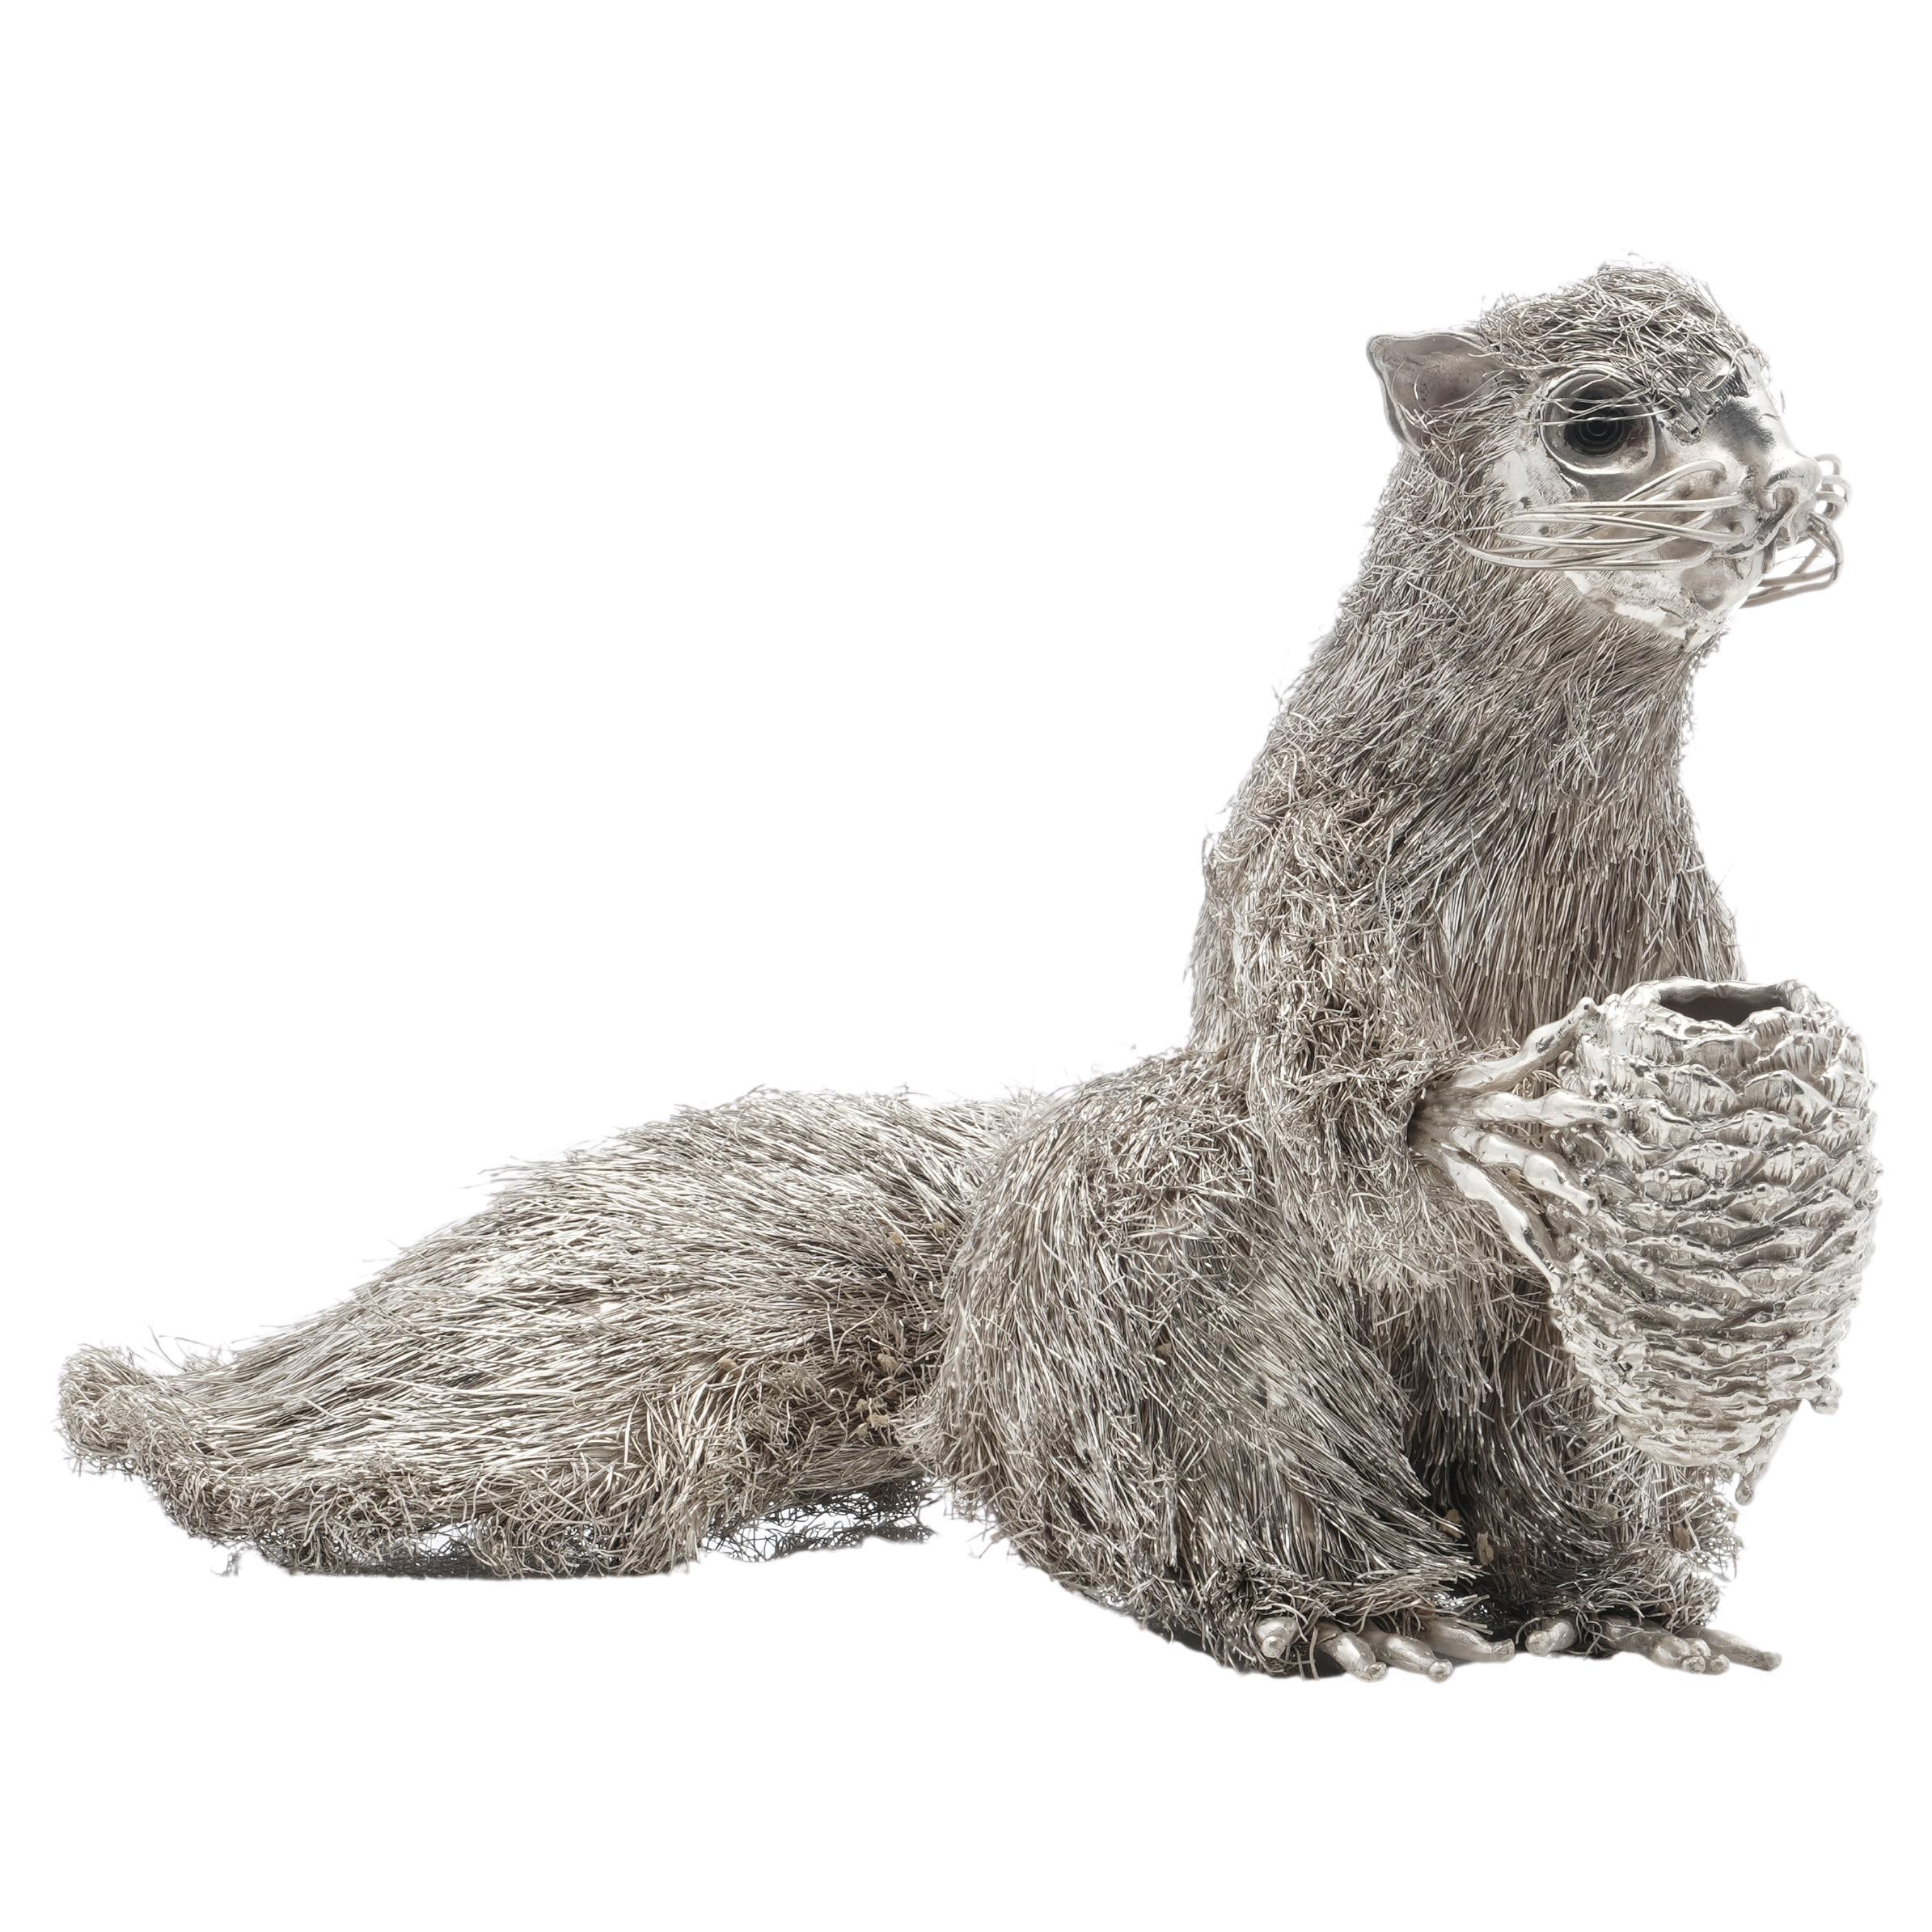 Mario Buccellati's  925 Sterlingsilber-Figur eines Eichhörnchens